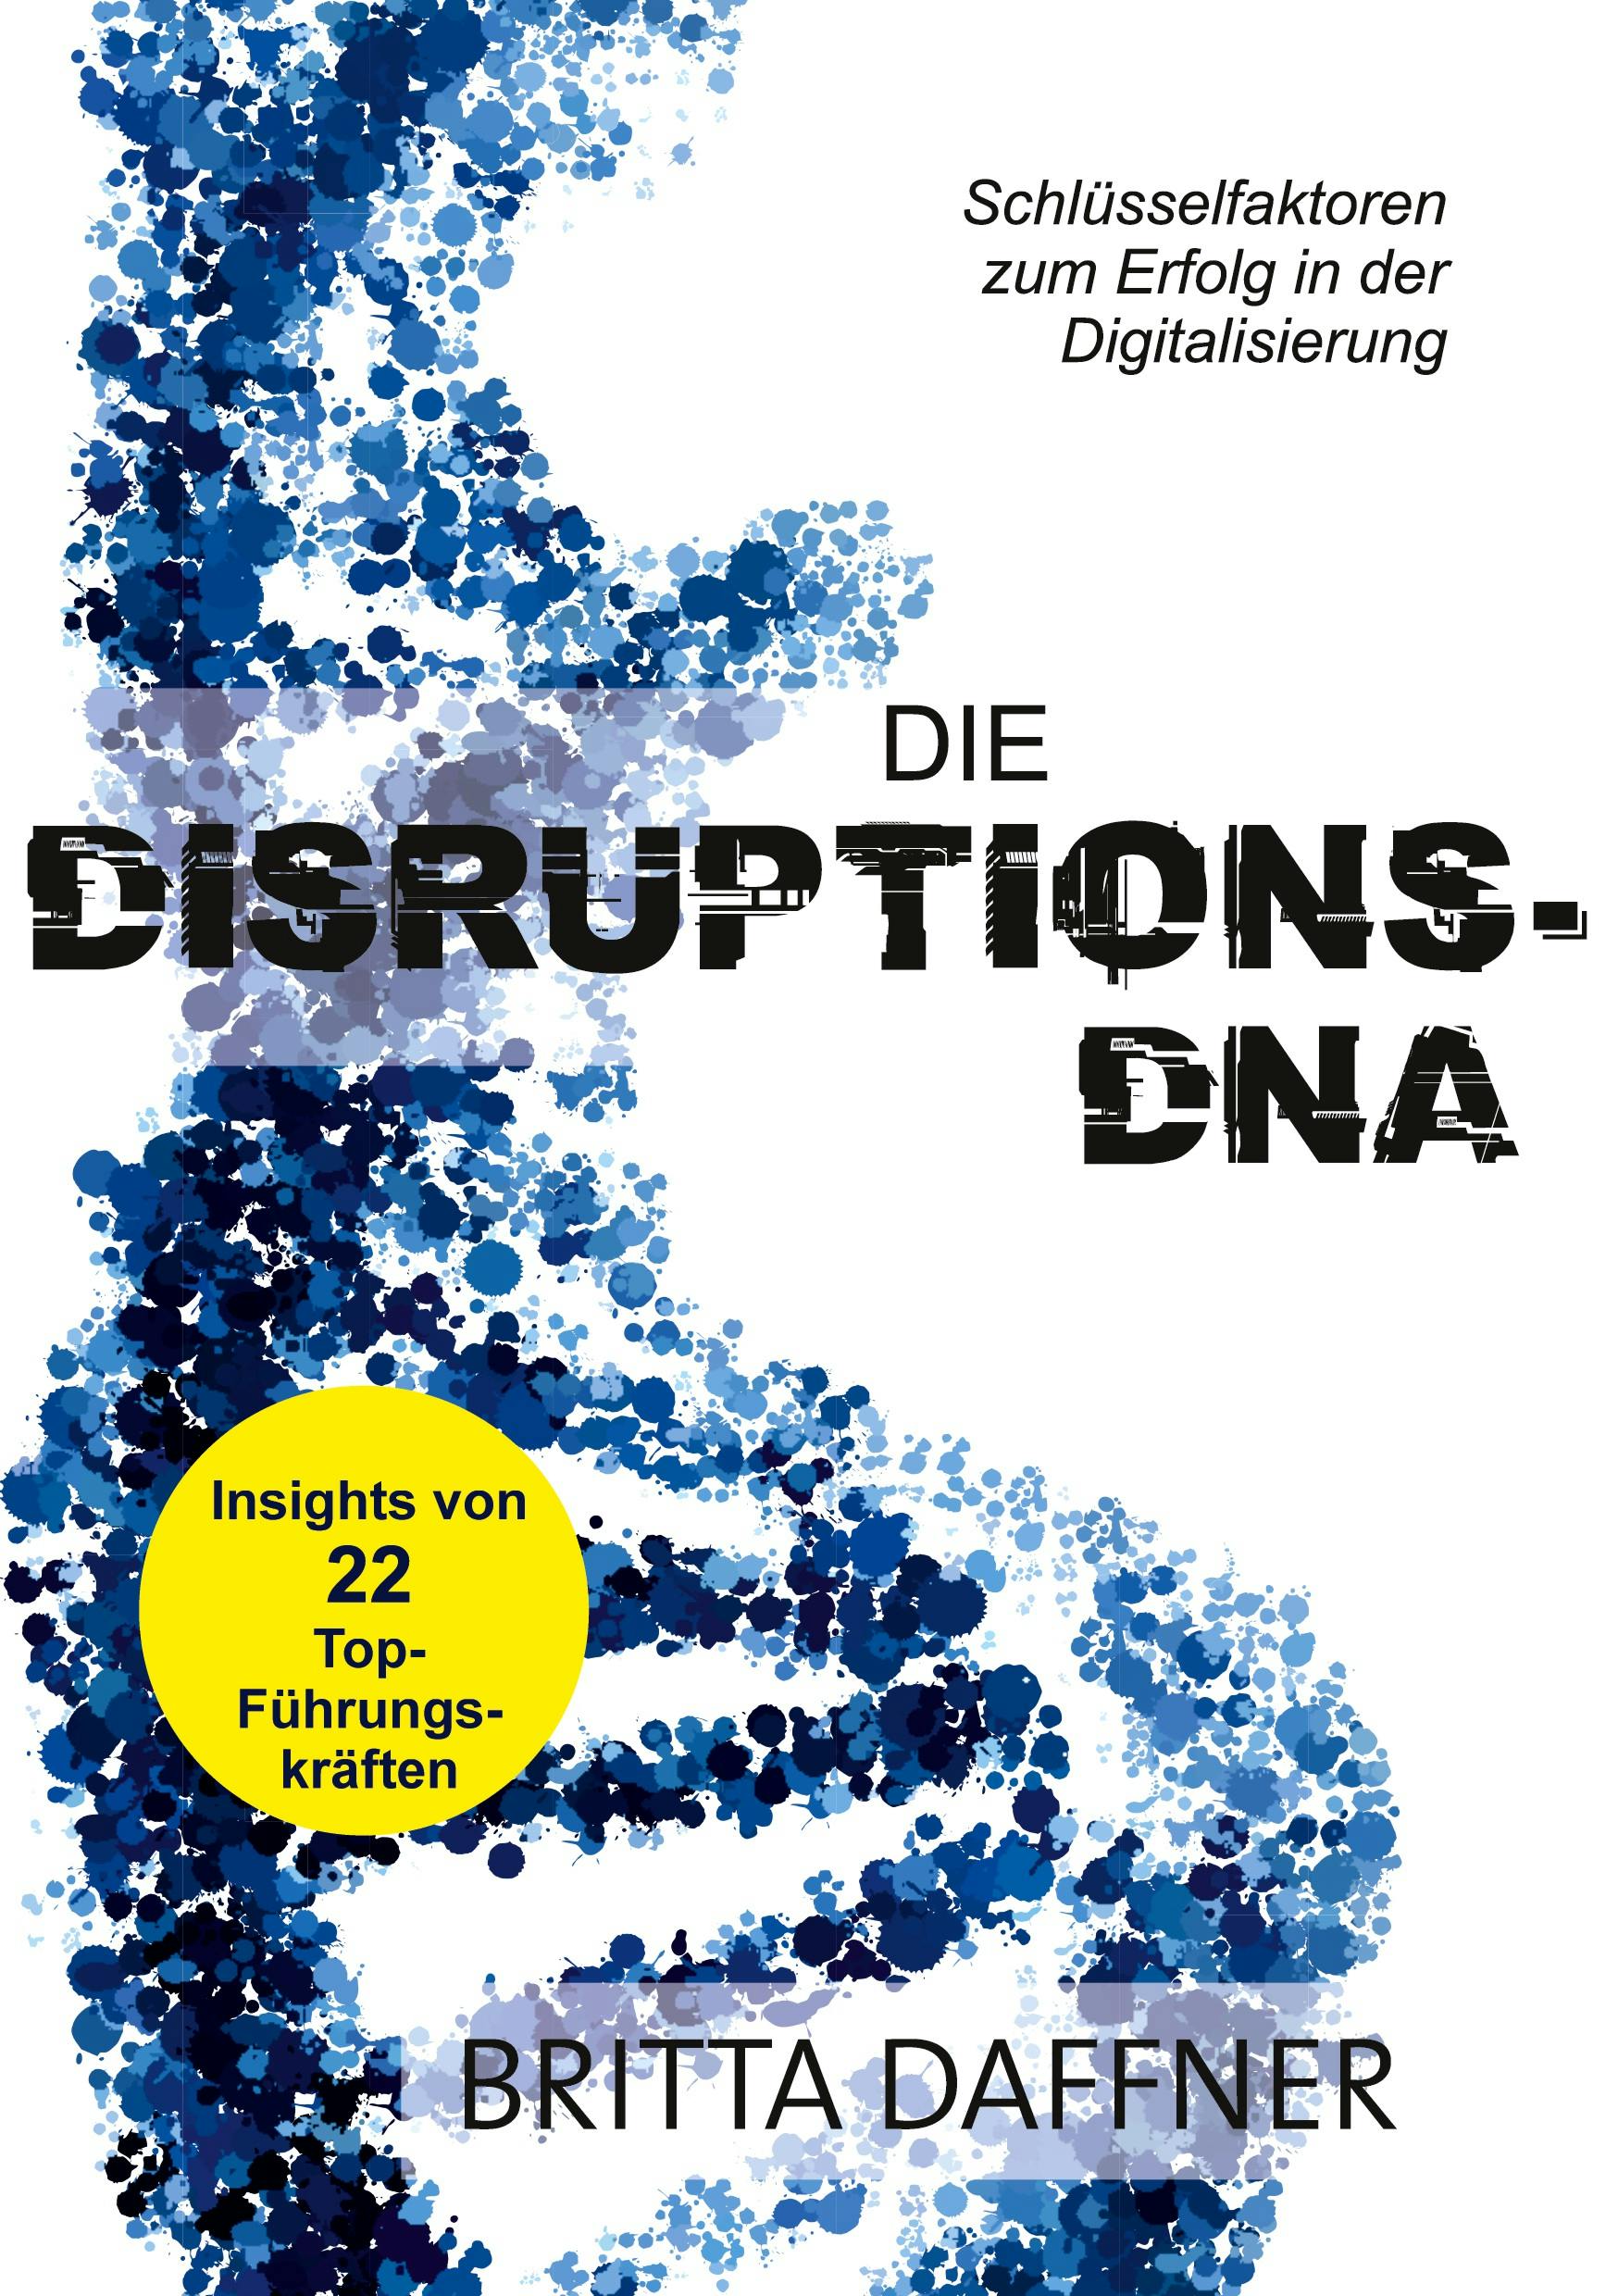 Die Disruptions-DNA - Britta Daffner